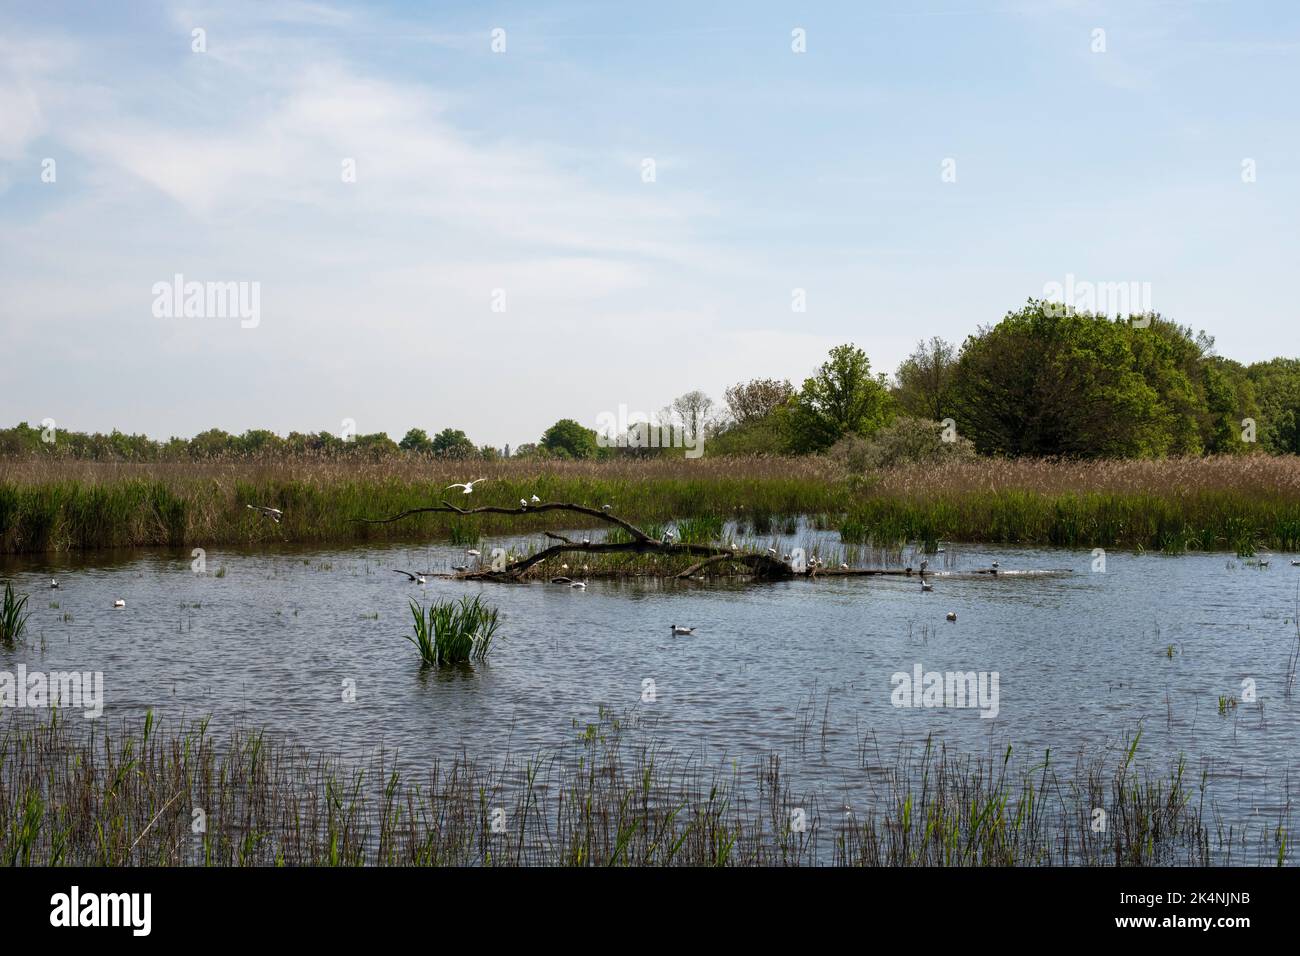 Teich des Parc Régional de la Brenne en France. Dieser Teich ist einer der 3000 anderen Teiche dieses Parc Régional. Viele Vögel finden das ganze Jahr über statt. Stockfoto